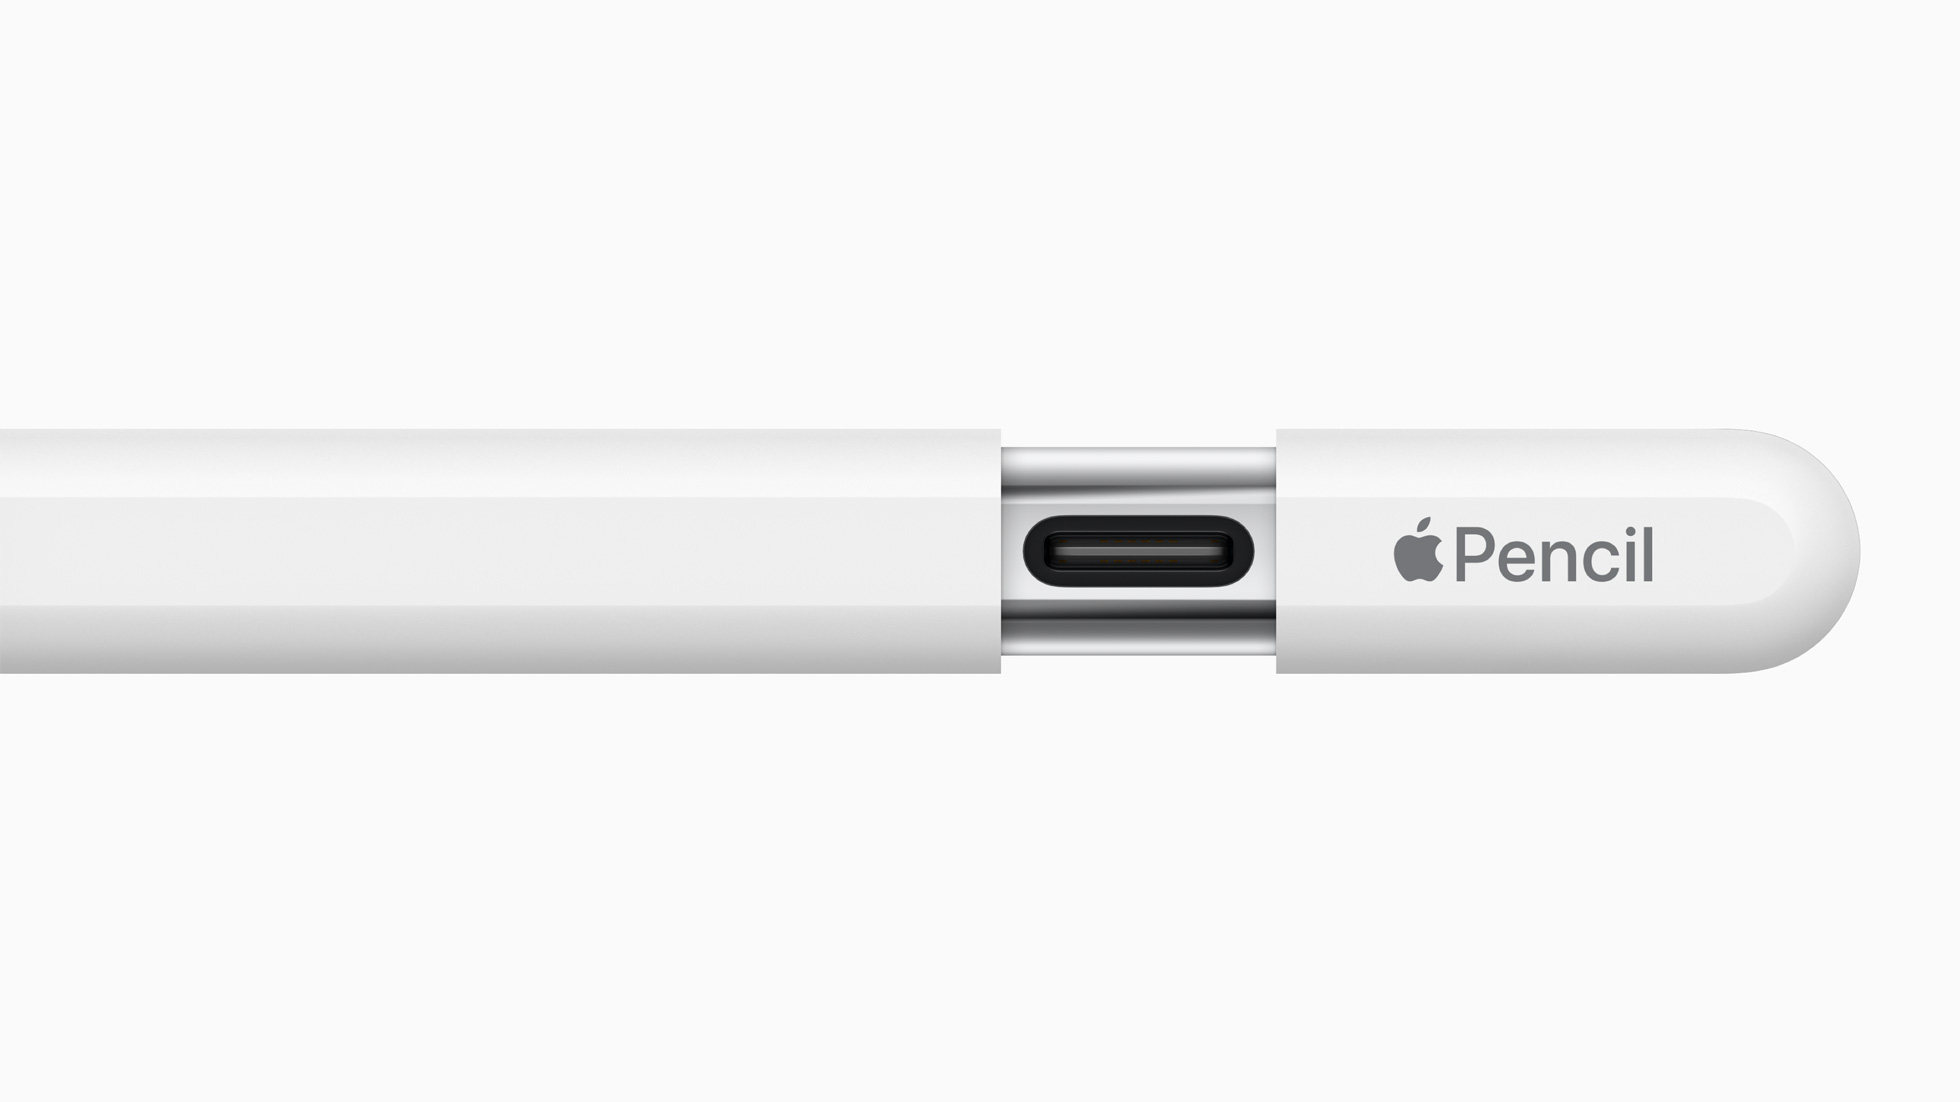 【2023新型】Apple Pencil（USB-C）発表！どんな人におすすめ？